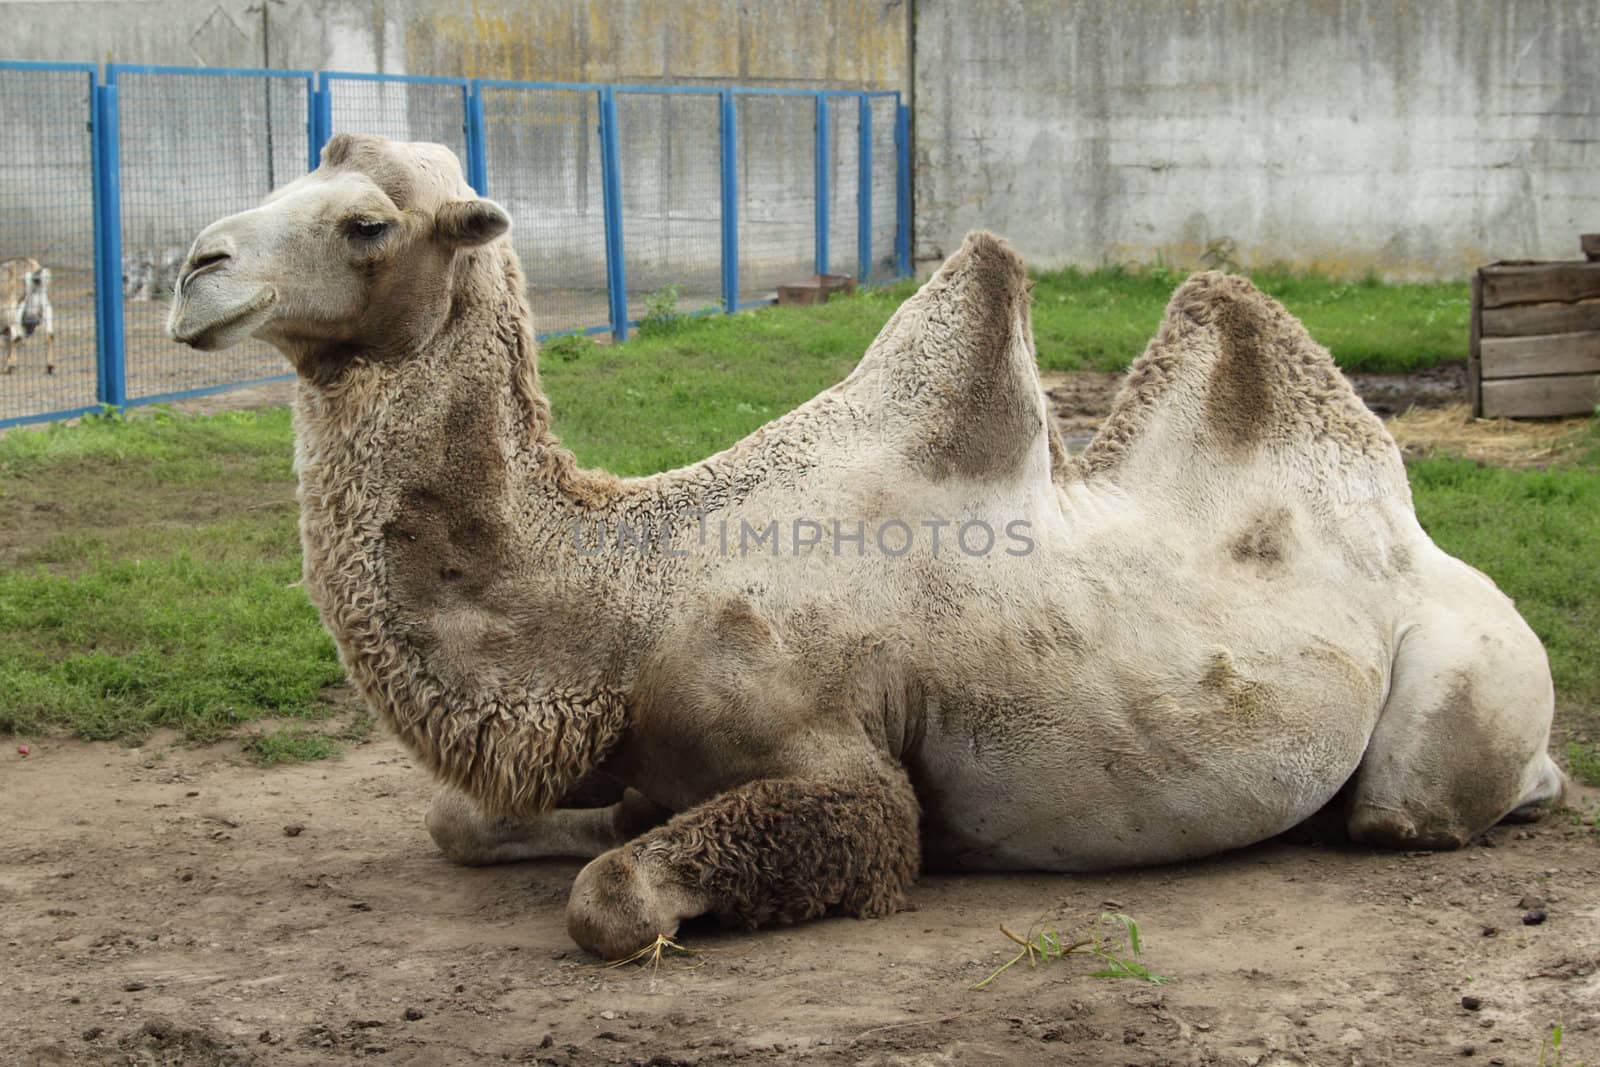 Camel in zoo by pulen